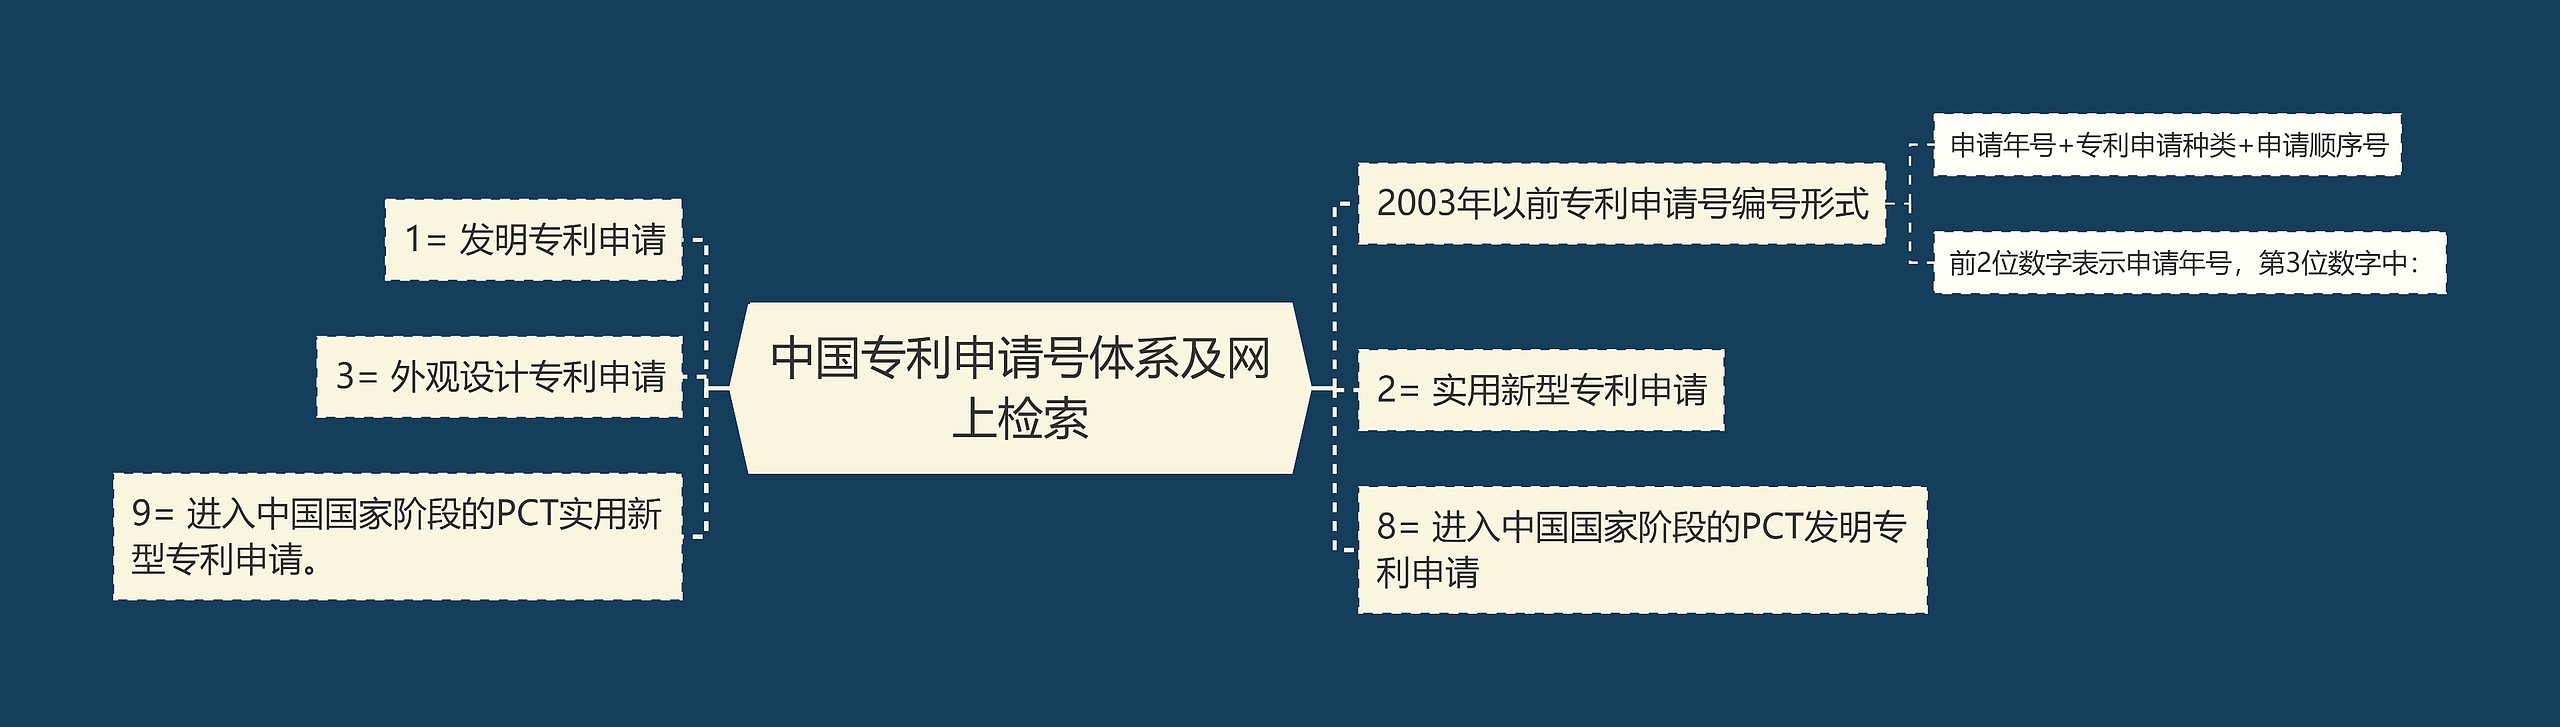 中国专利申请号体系及网上检索思维导图